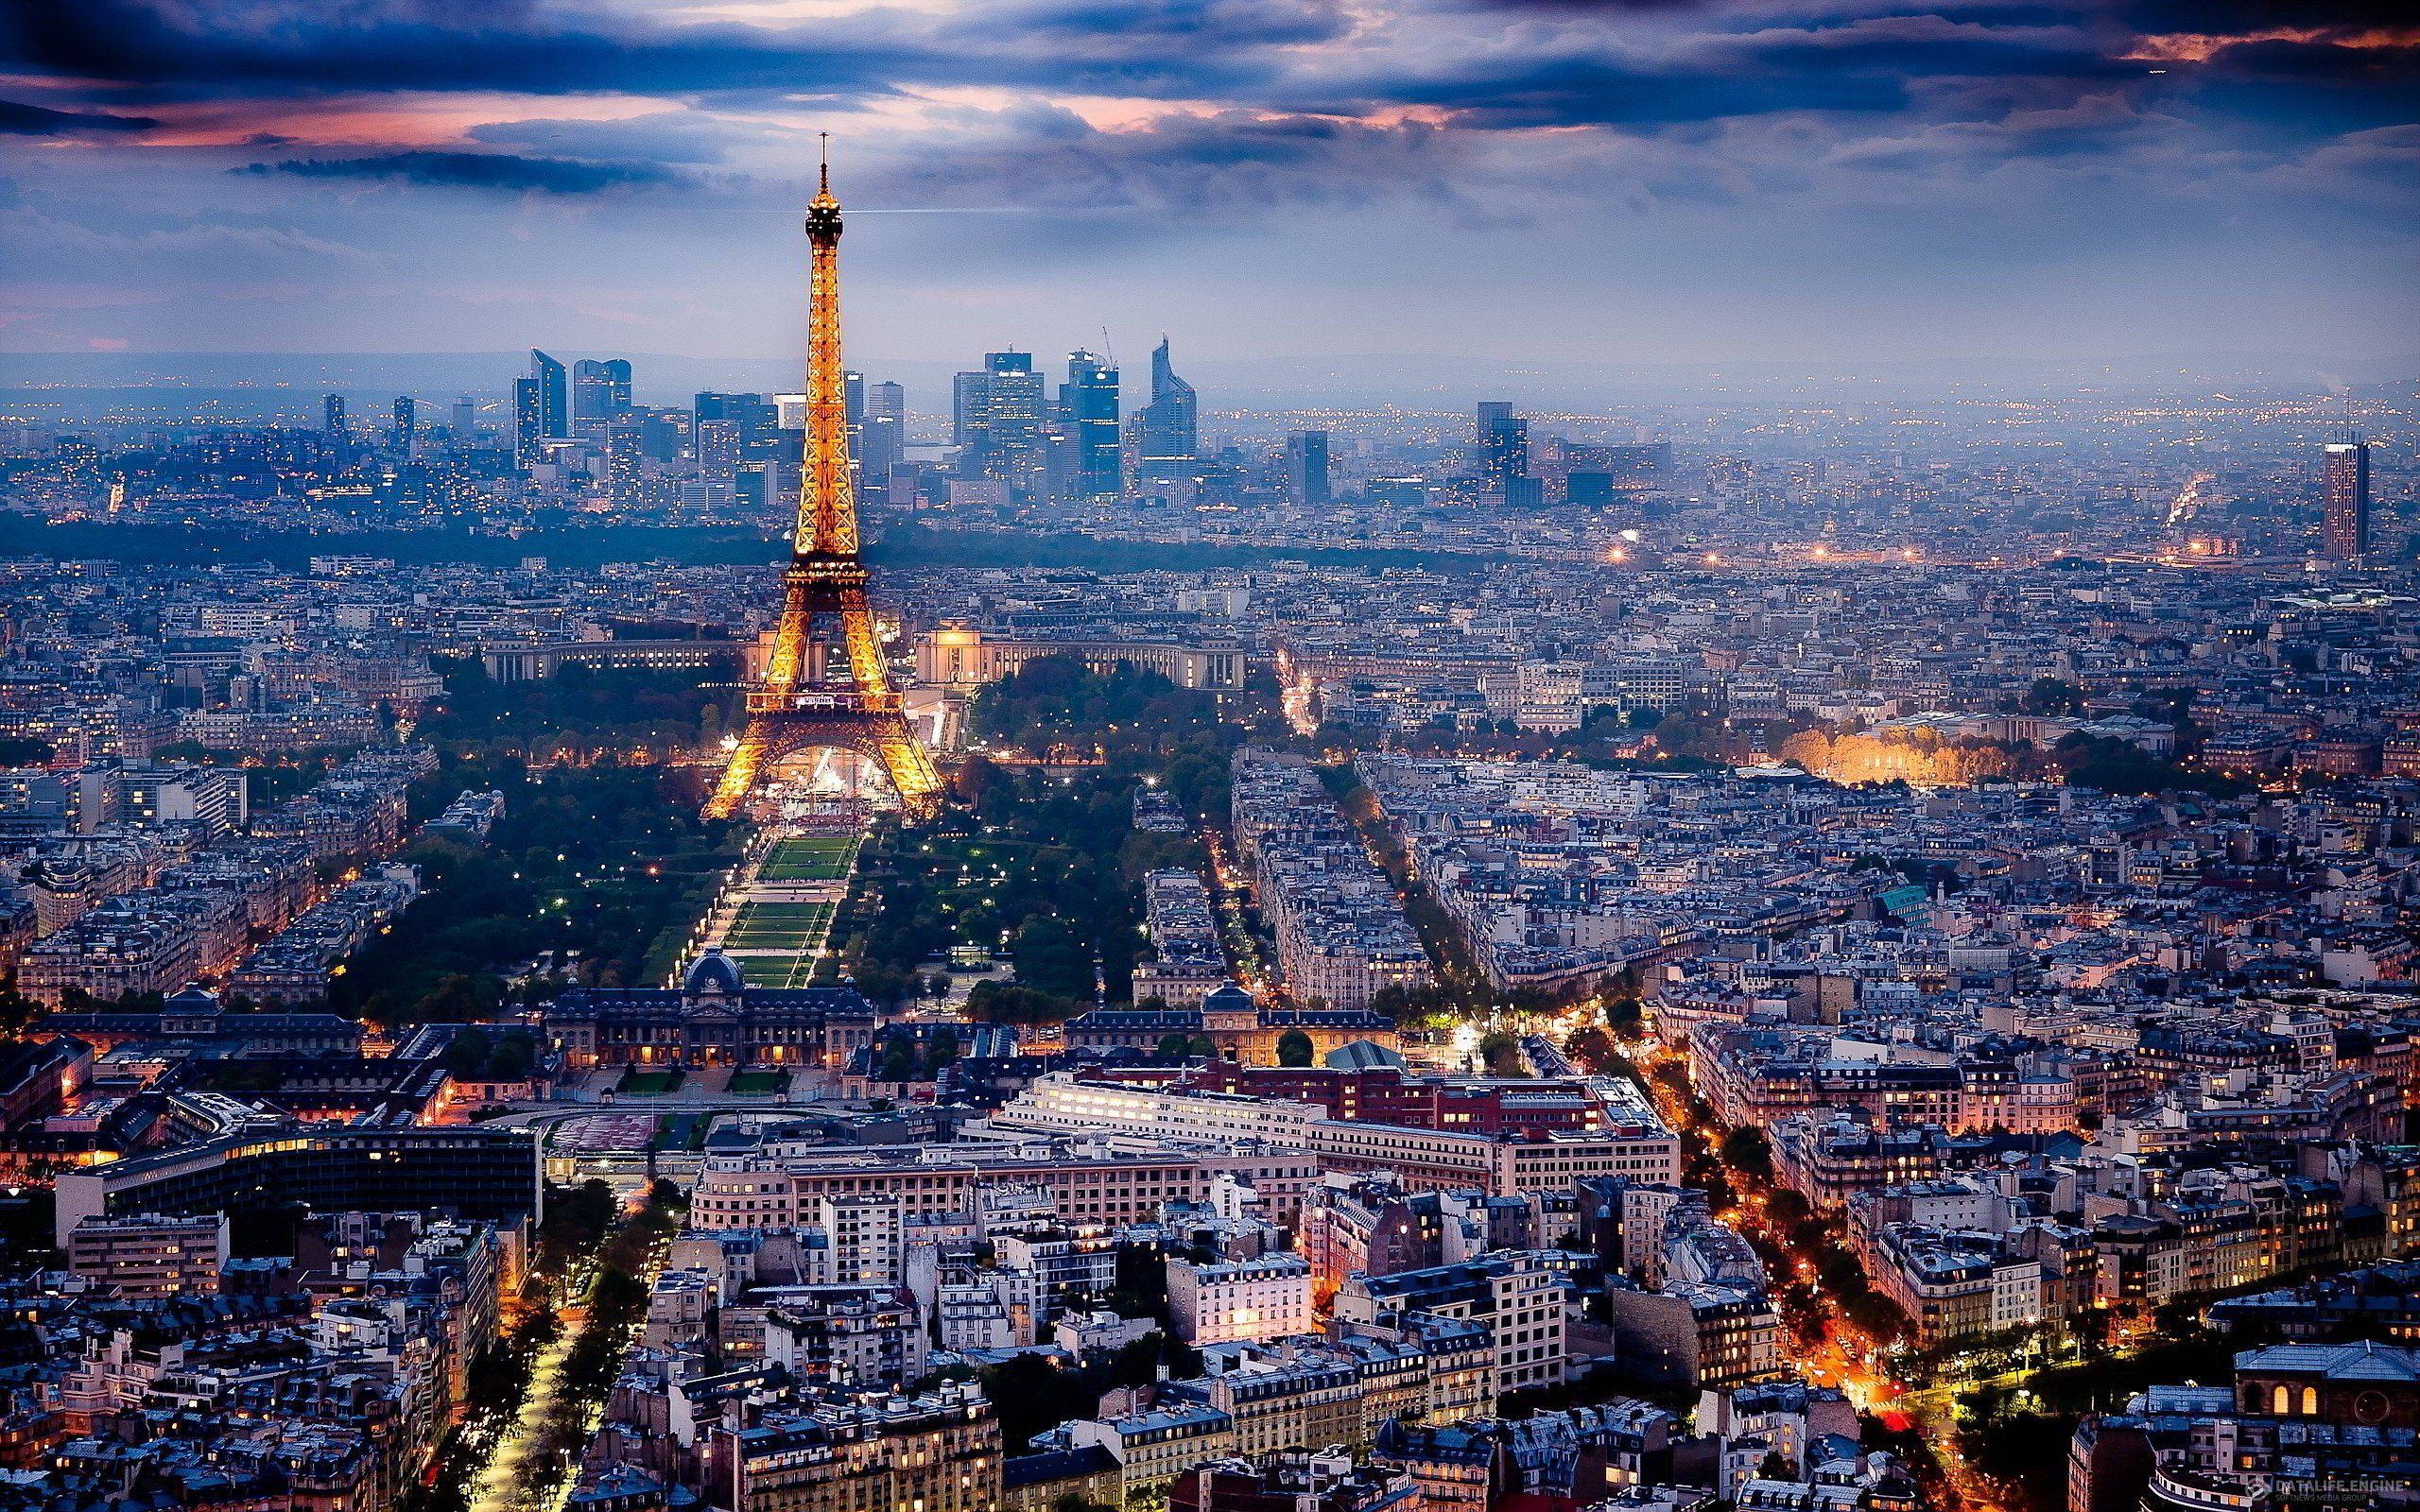 عکس هوایی برج ایفل در شهر پاریس با اماکن دیدنی زیبا و متنوع